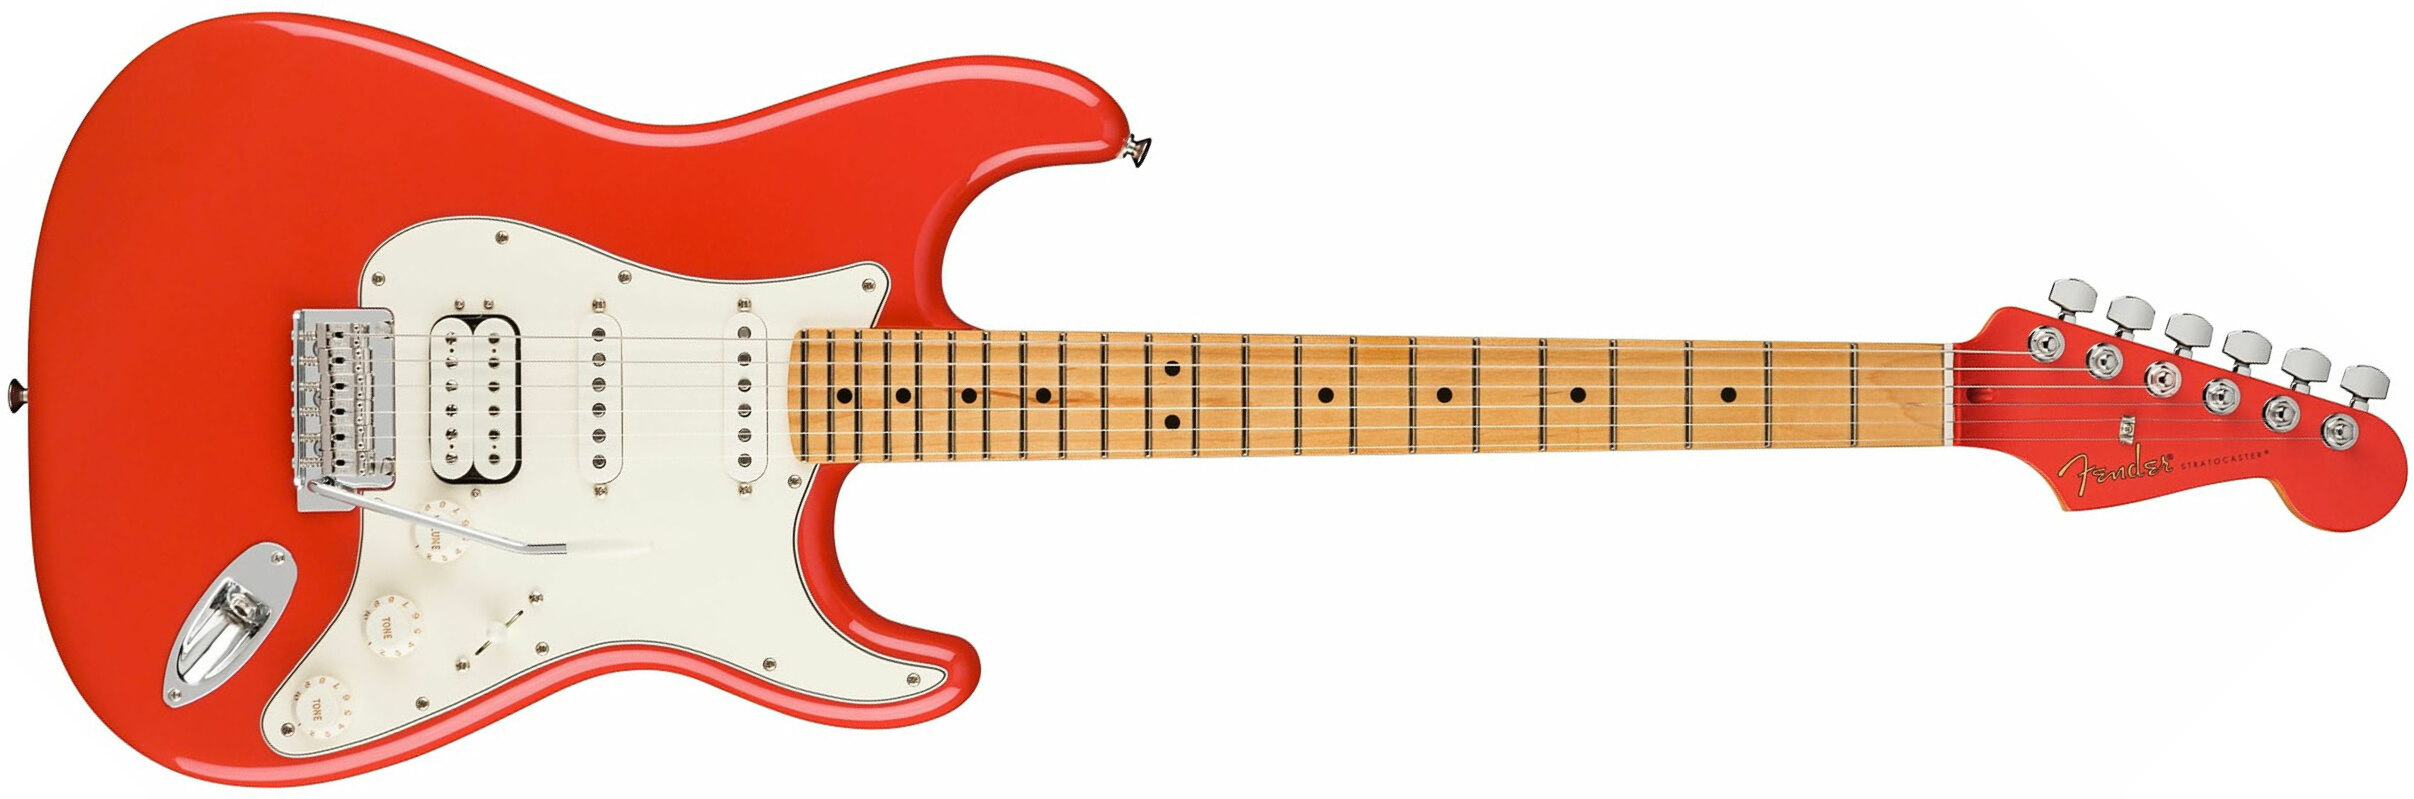 Fender Strat Player Hss Ltd Mex Trem Mn - Fiesta Red - Elektrische gitaar in Str-vorm - Main picture